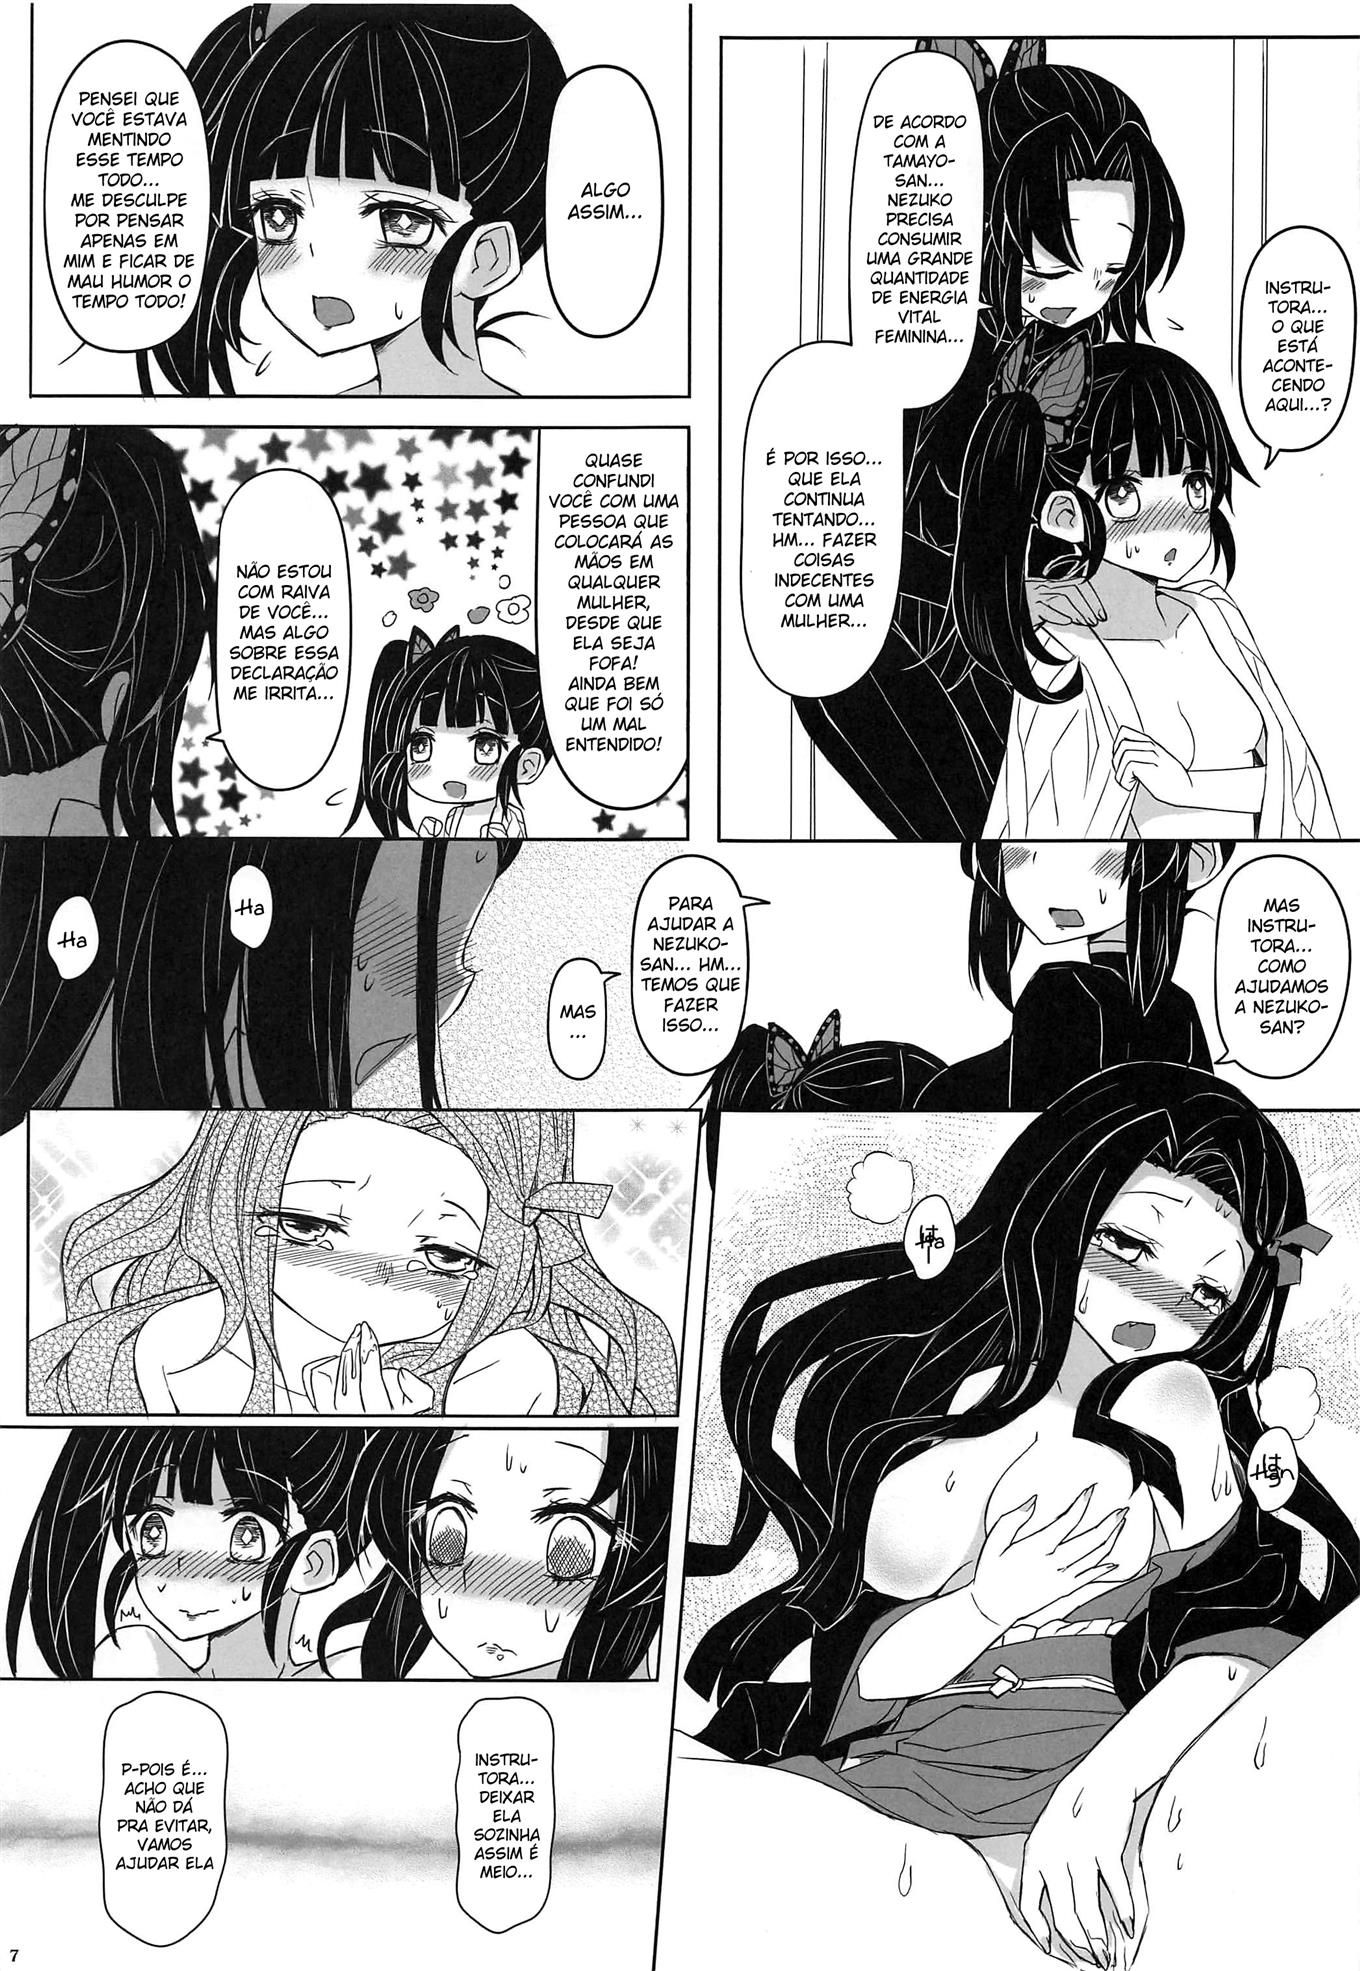 Por favor! Faça sexo com à Nezuko! (8)